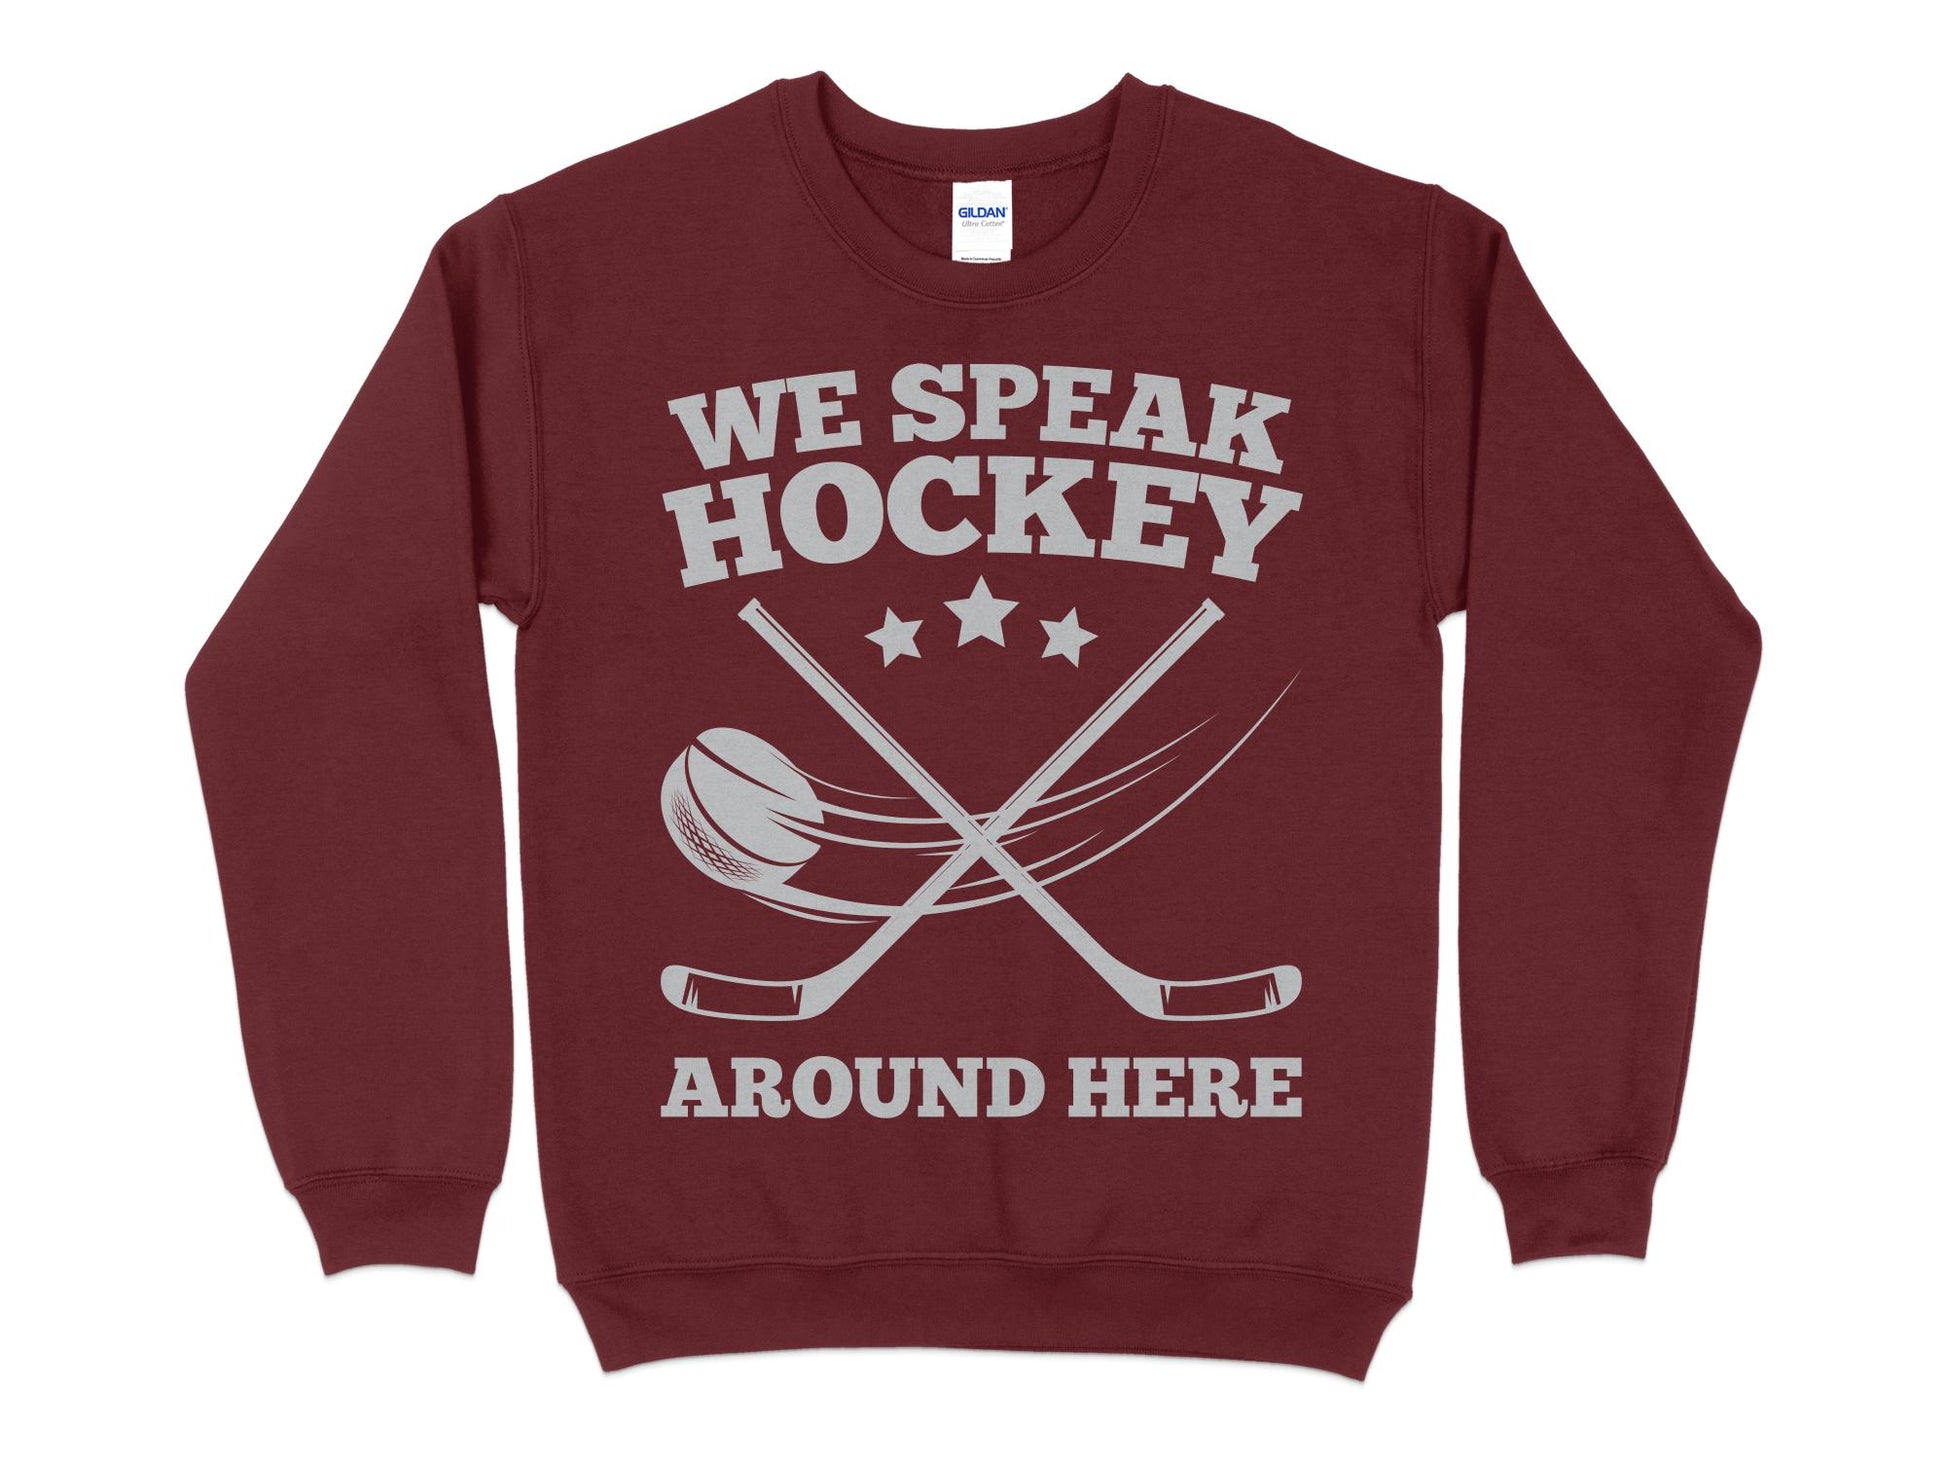 Funny Hockey Sweatshirt - We Speak Hockey Around Here, maroon